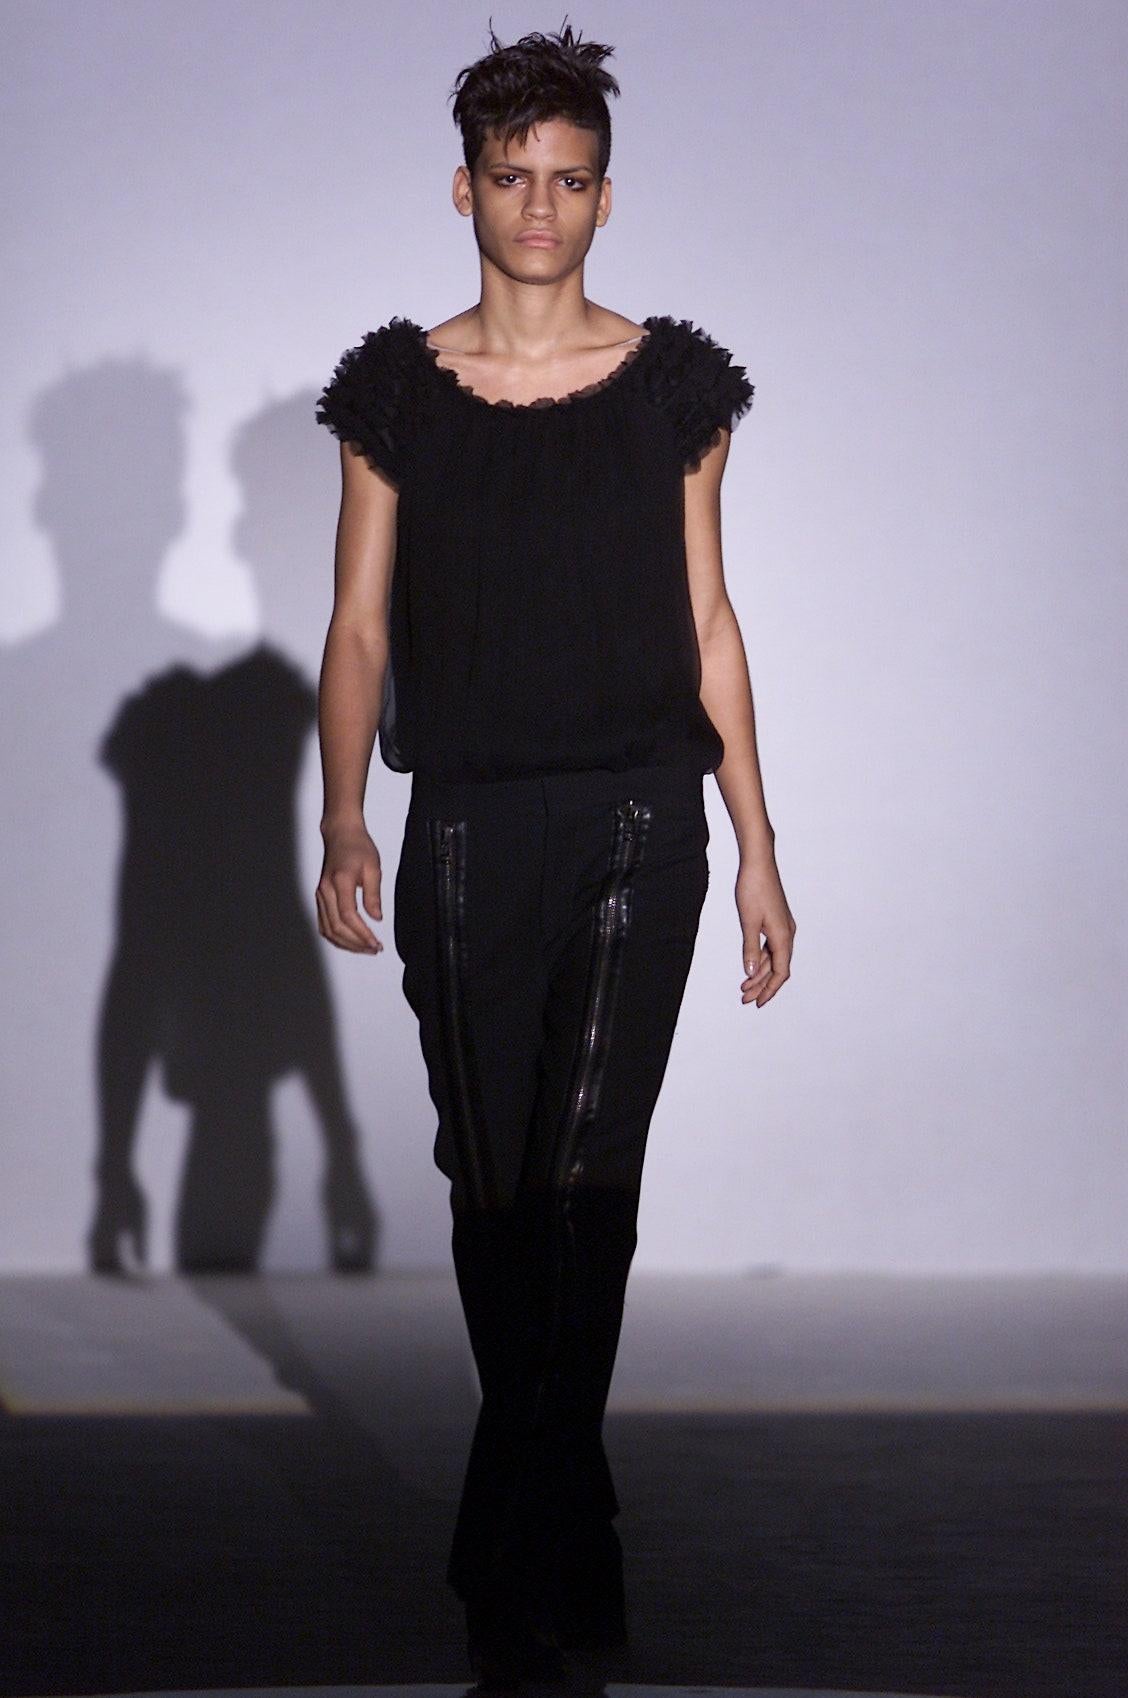 Wir präsentieren ein Paar fabelhafte schwarze Gucci-Hosen mit Reißverschluss, entworfen von Tom Ford. Diese Hose aus der Herbst/Winter-Kollektion 2001 wurde auf dem Laufsteg als Teil des Looks 2 von Karolina Kurkova präsentiert und kam auch in den